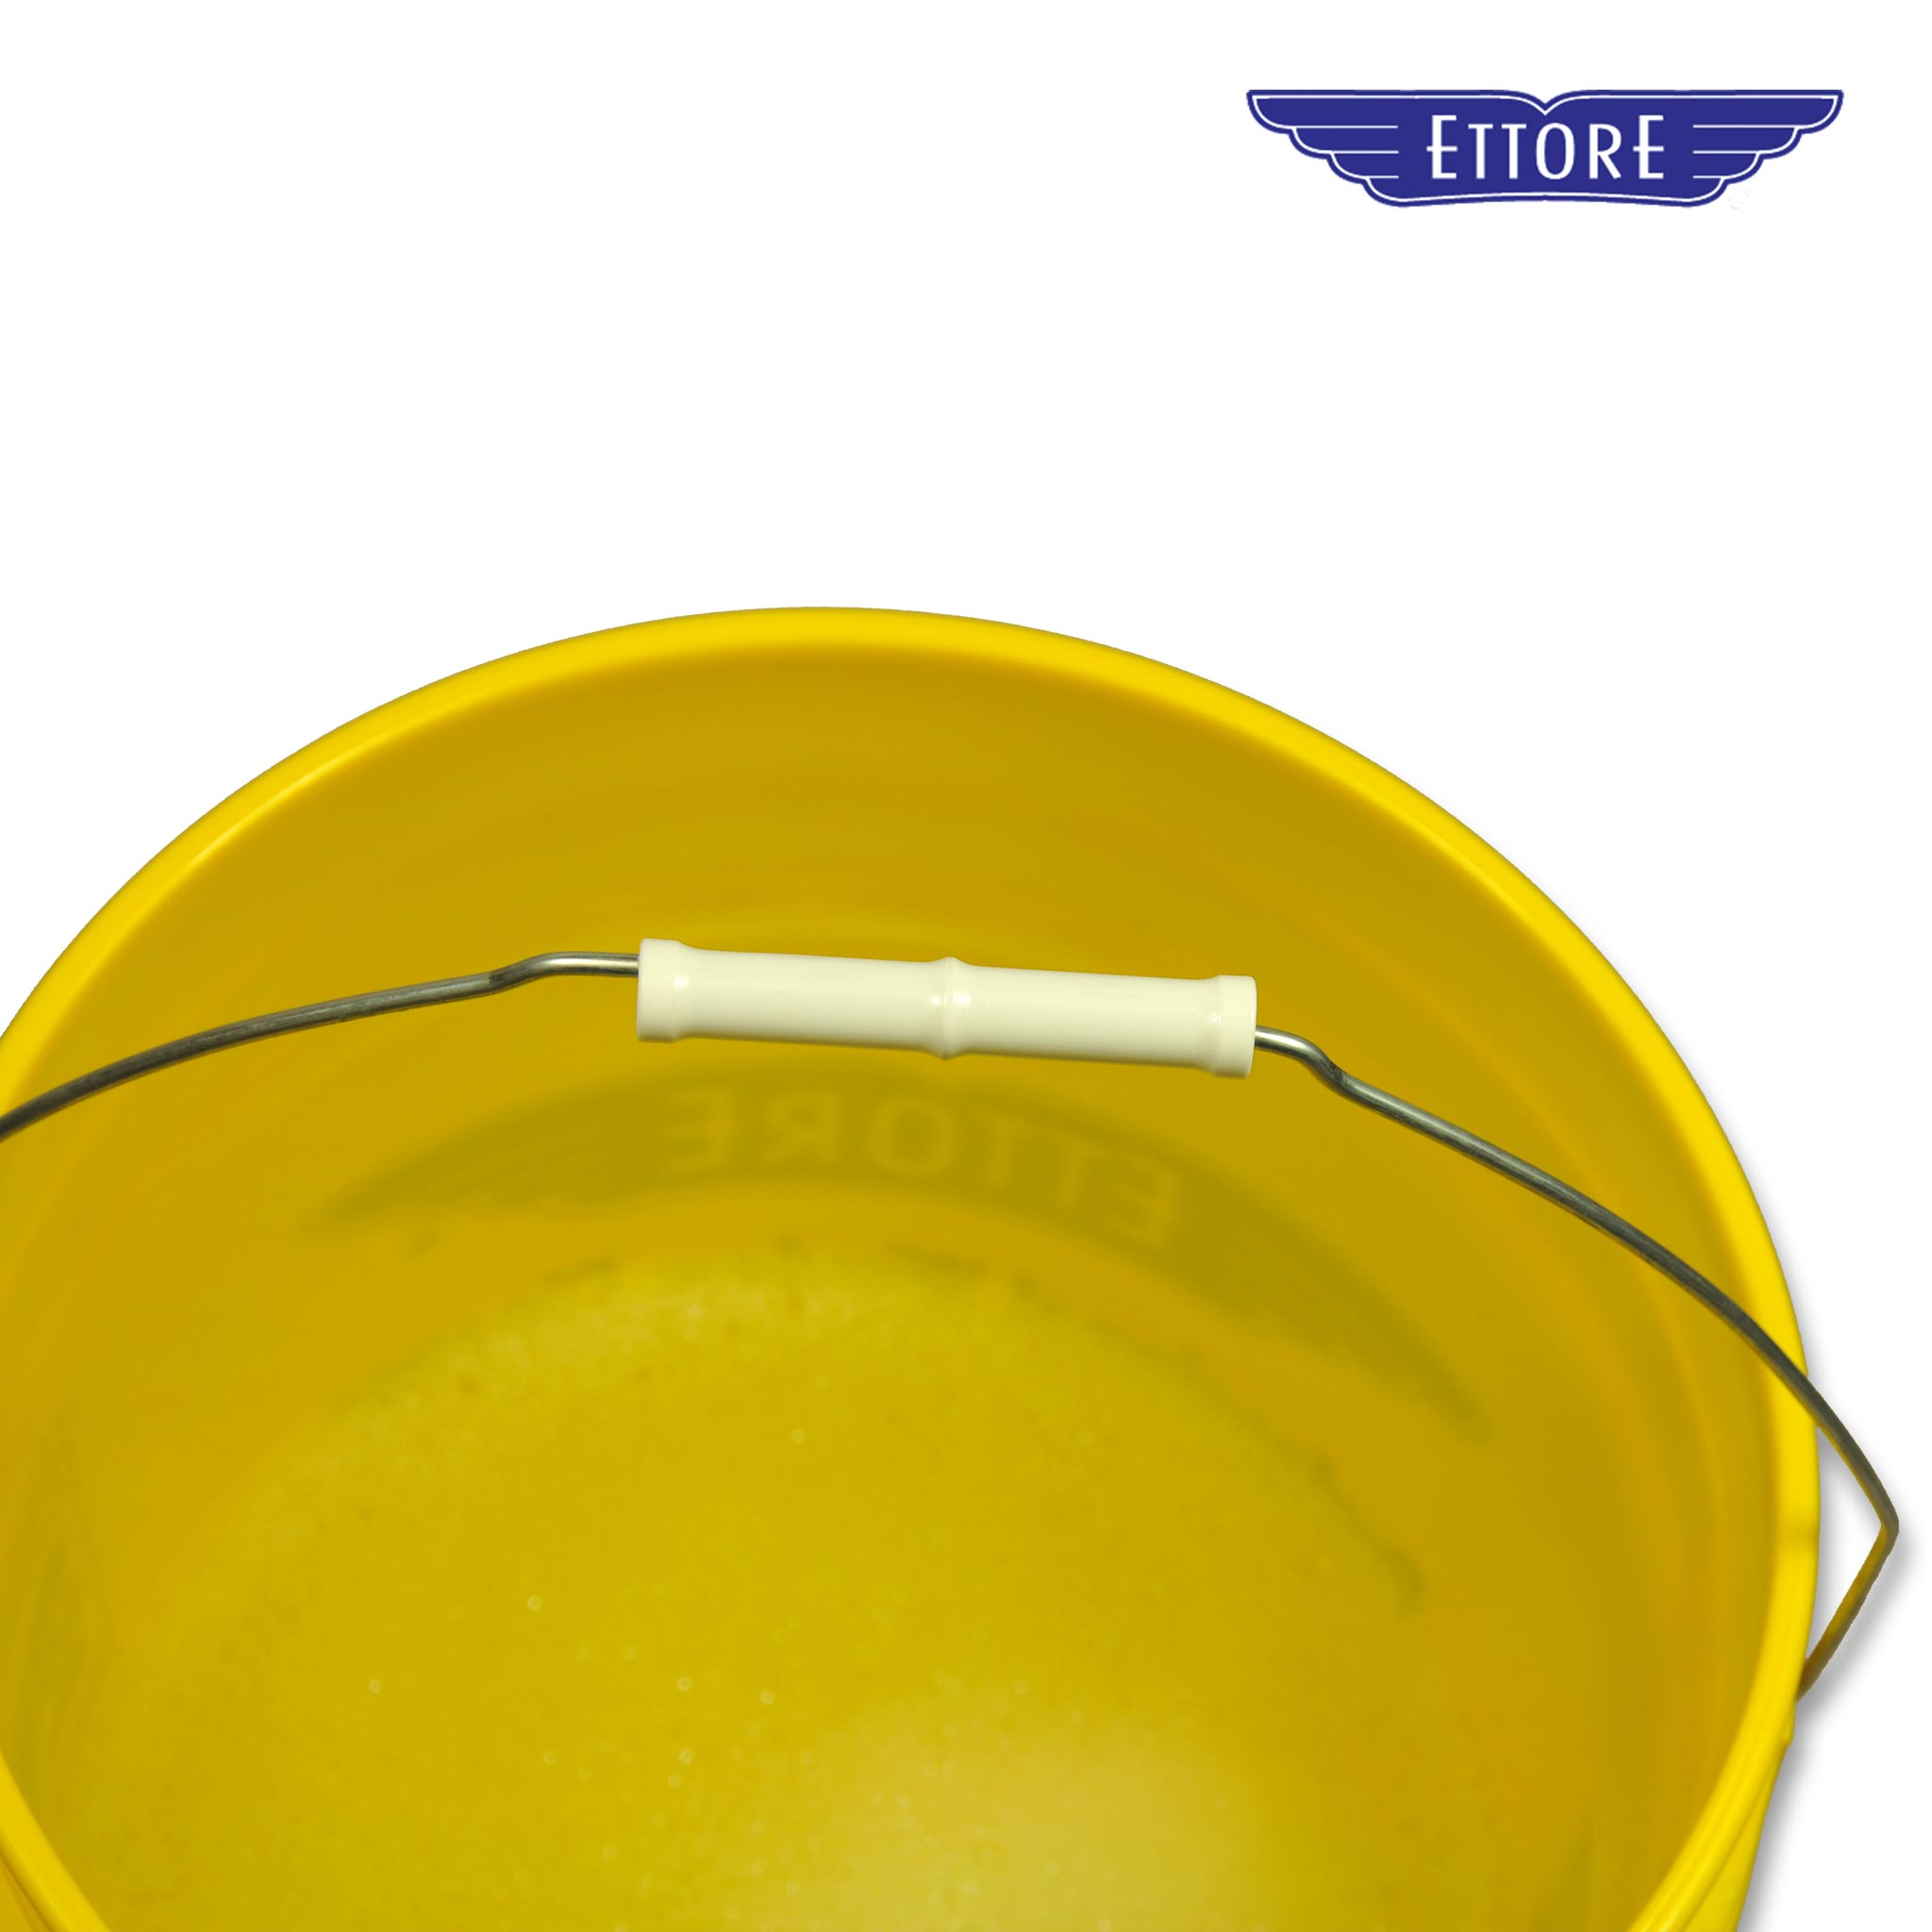 Ettore Round Bucket - 13 Litre